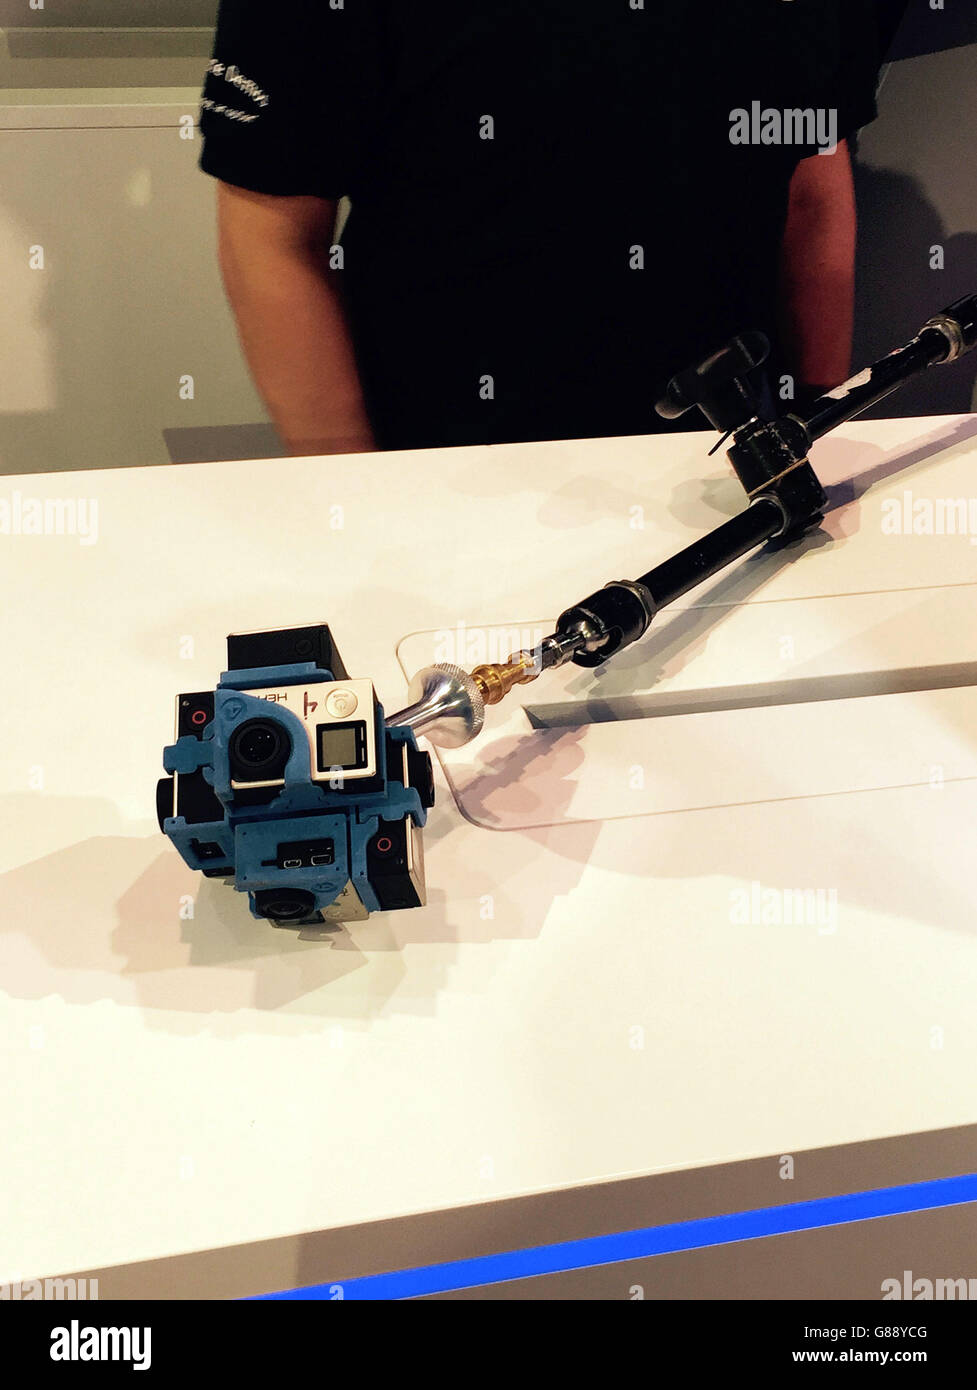 Il selfie stick di nuova generazione di Intel è stato presentato durante una conferenza stampa alla fiera tecnologica IFA di Berlino. Foto Stock